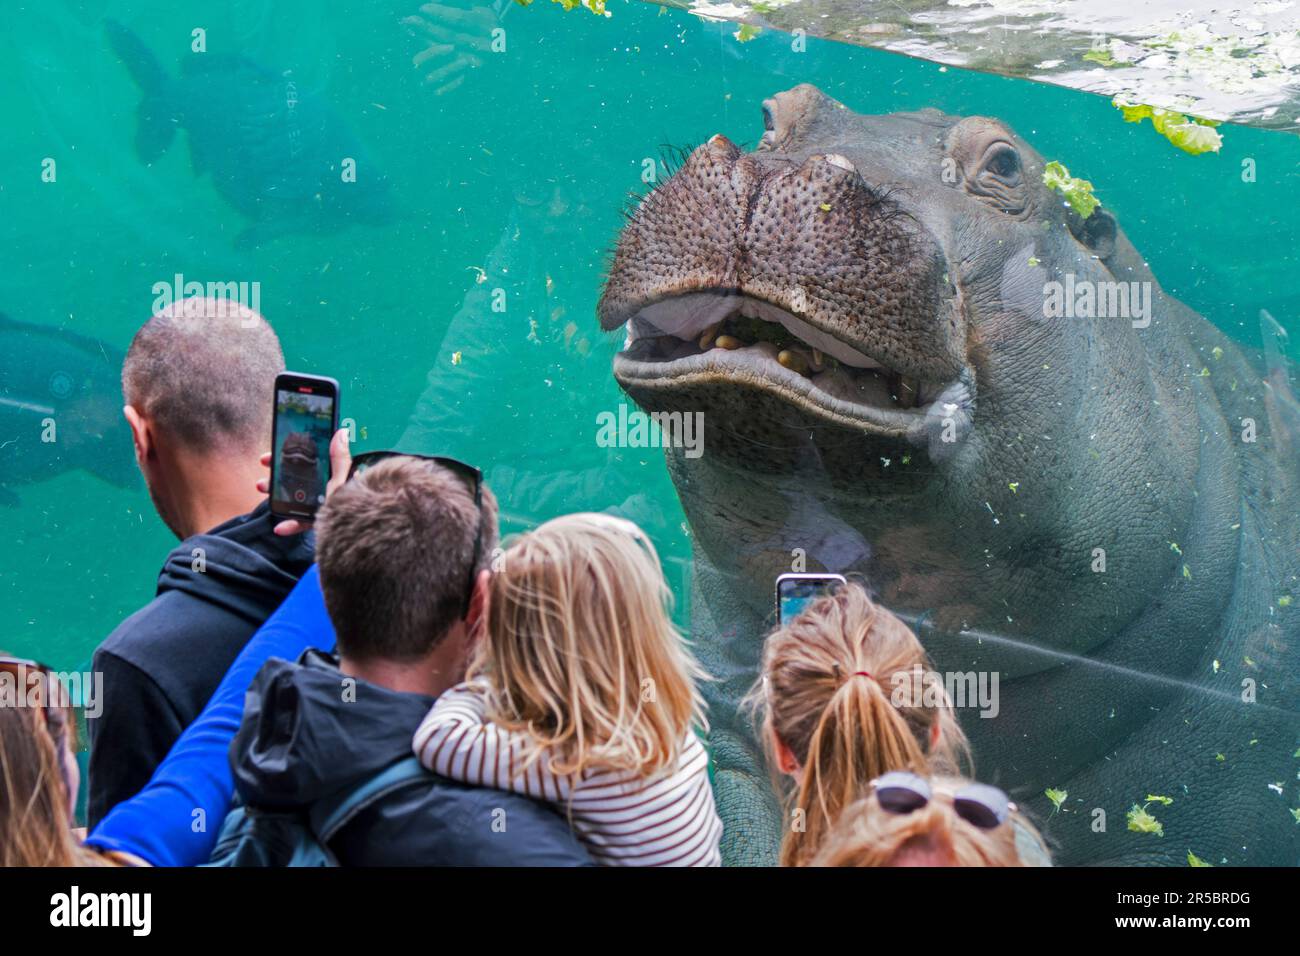 Les visiteurs du zoo prennent des photos avec leurs smartphones d'hippopotame nageant sous l'eau au ZooParc de Beauval, parc zoologique de France Banque D'Images